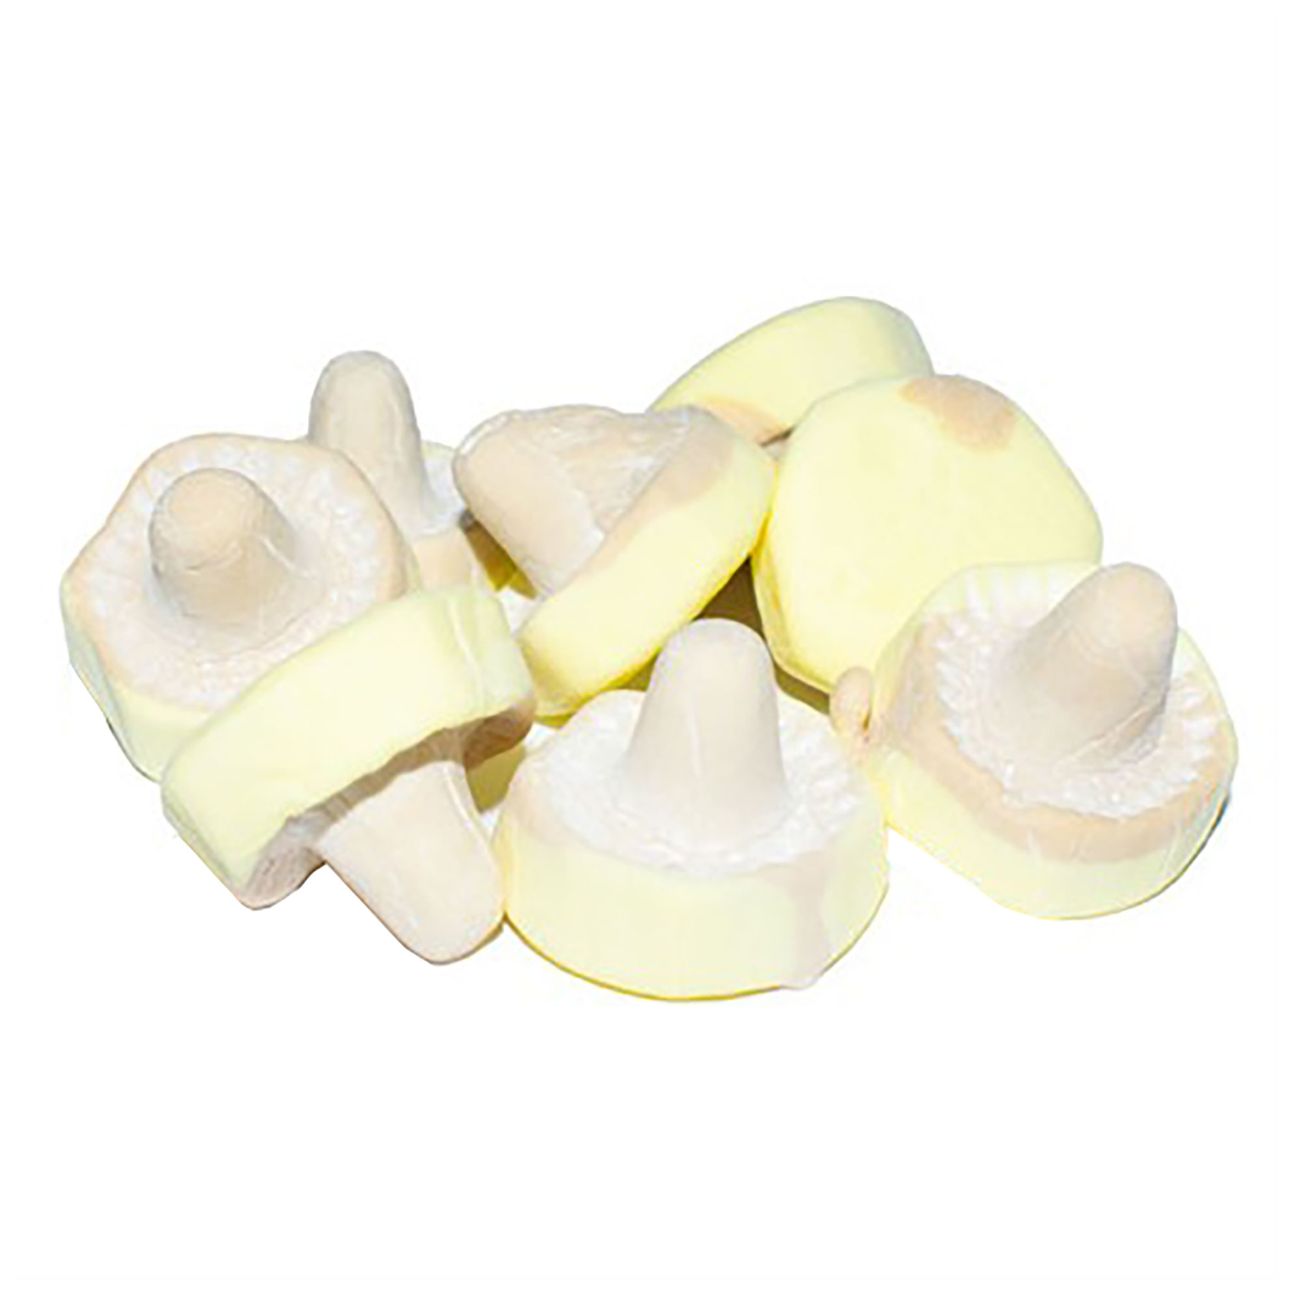 skumsvampar-banankola-storpack-85502-1